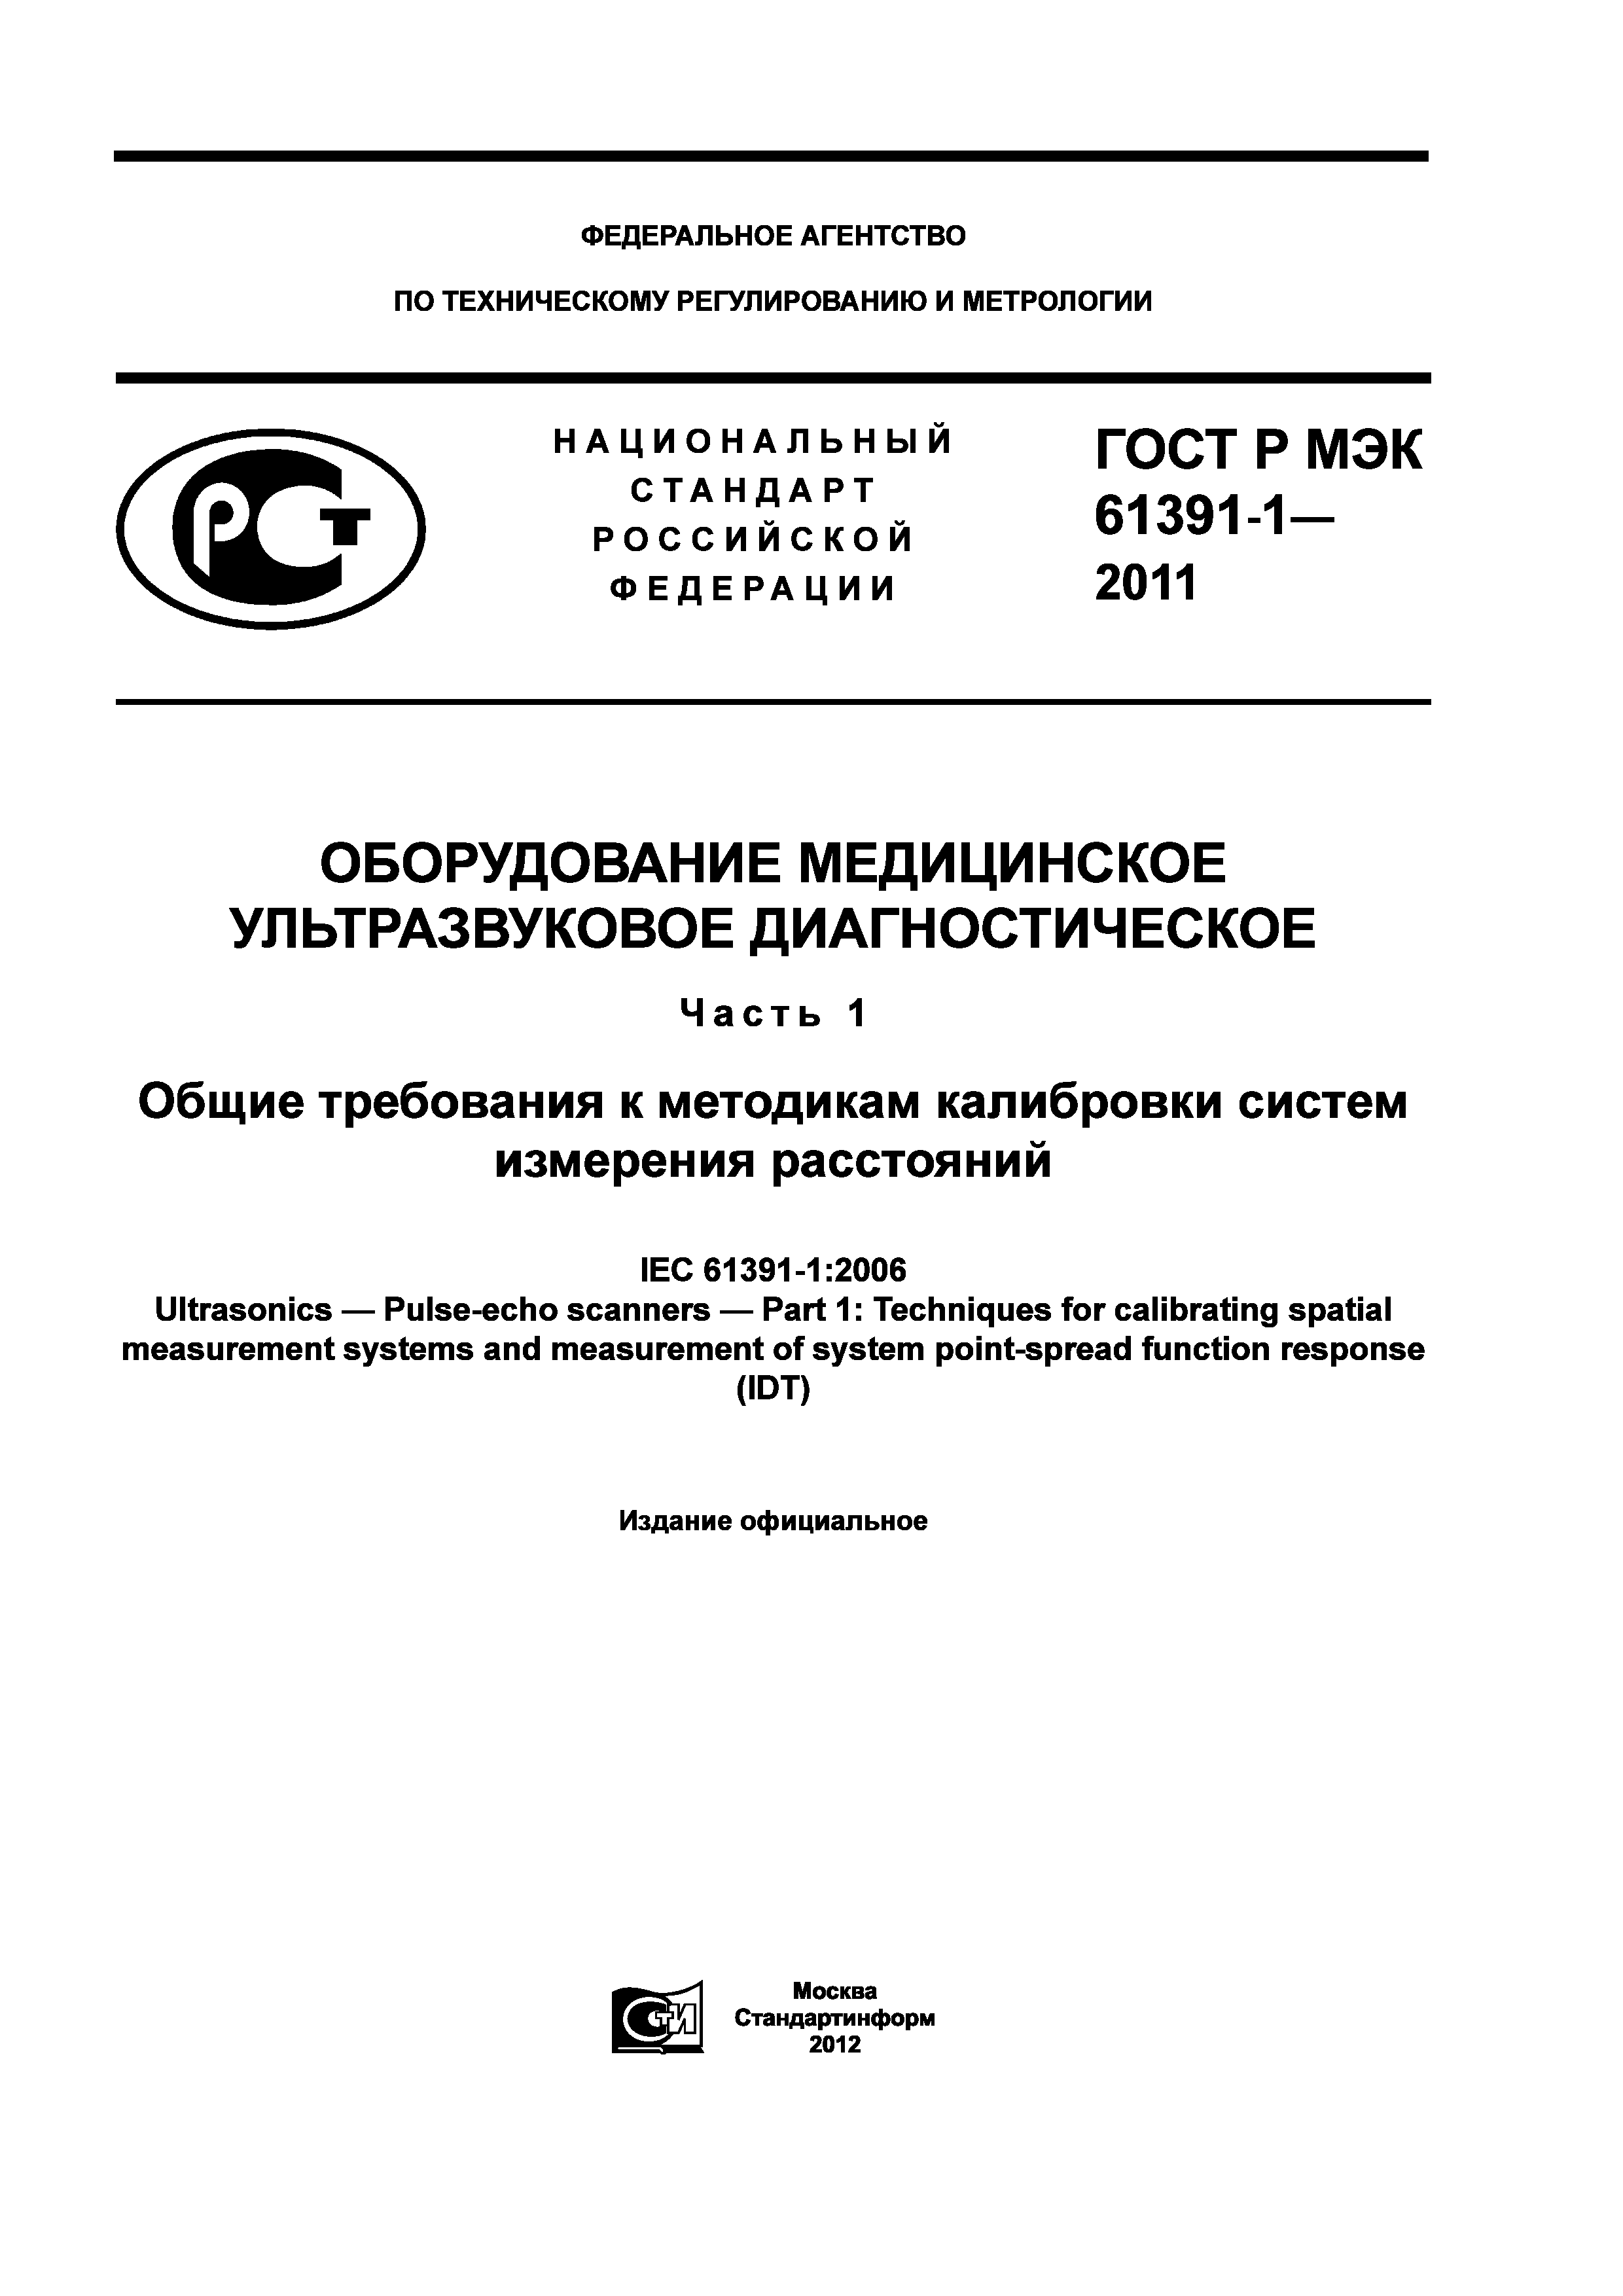 ГОСТ Р МЭК 61391-1-2011